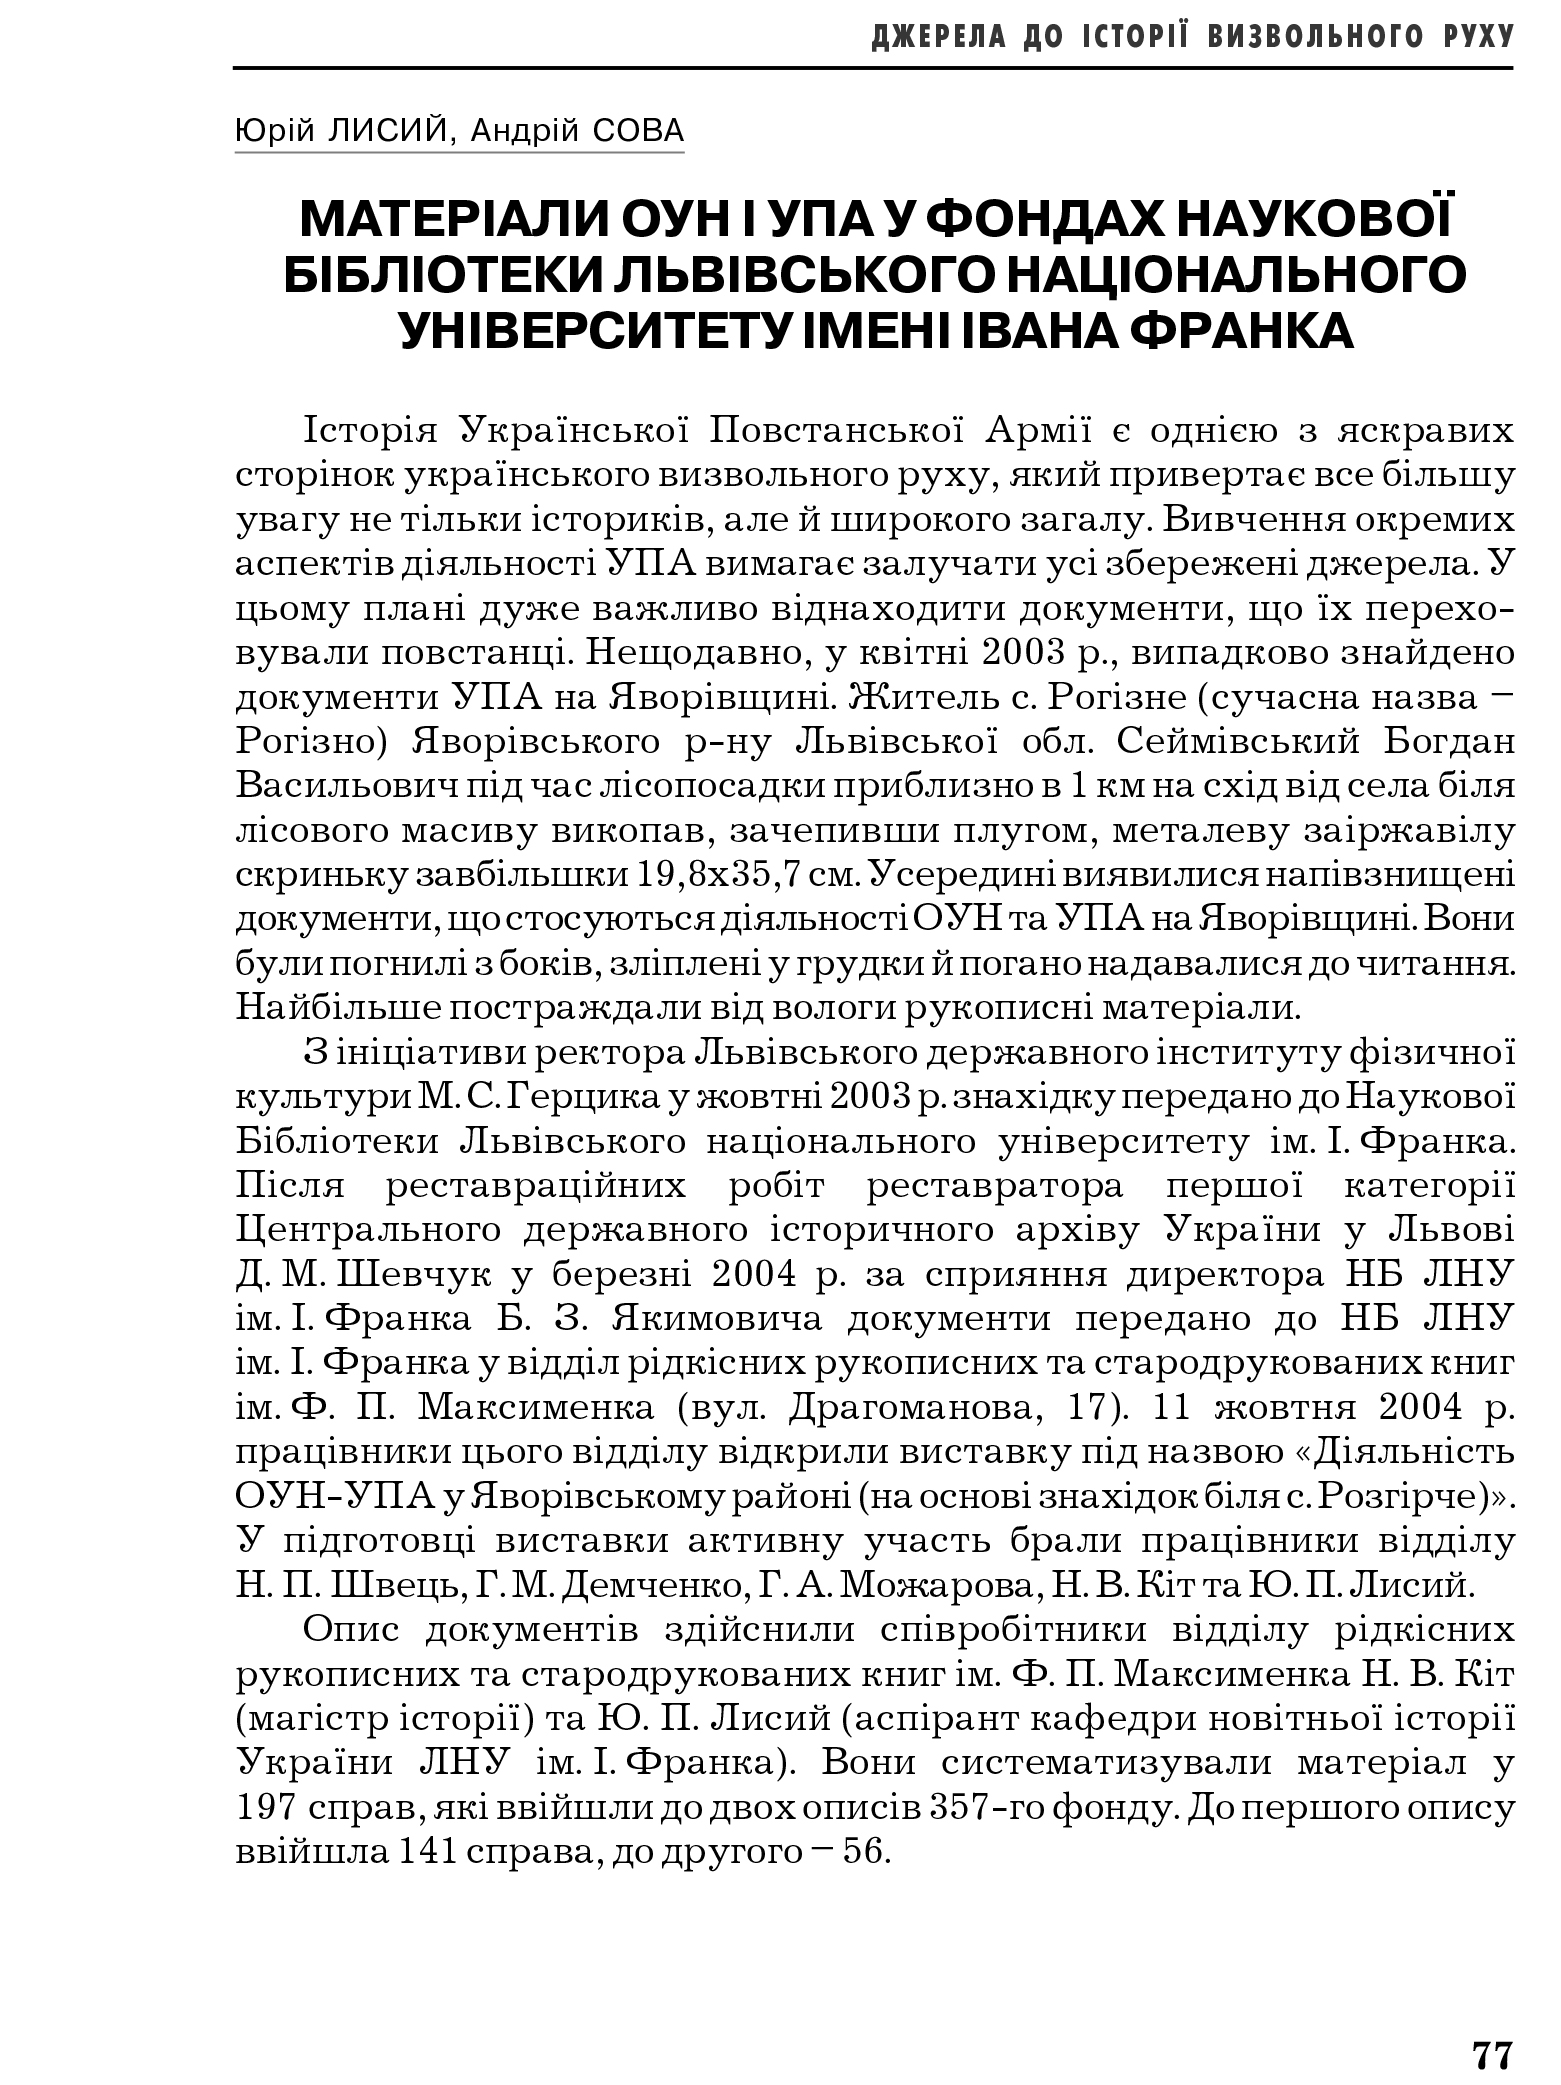 Український визвольний рух №6, ст. 77 - 82